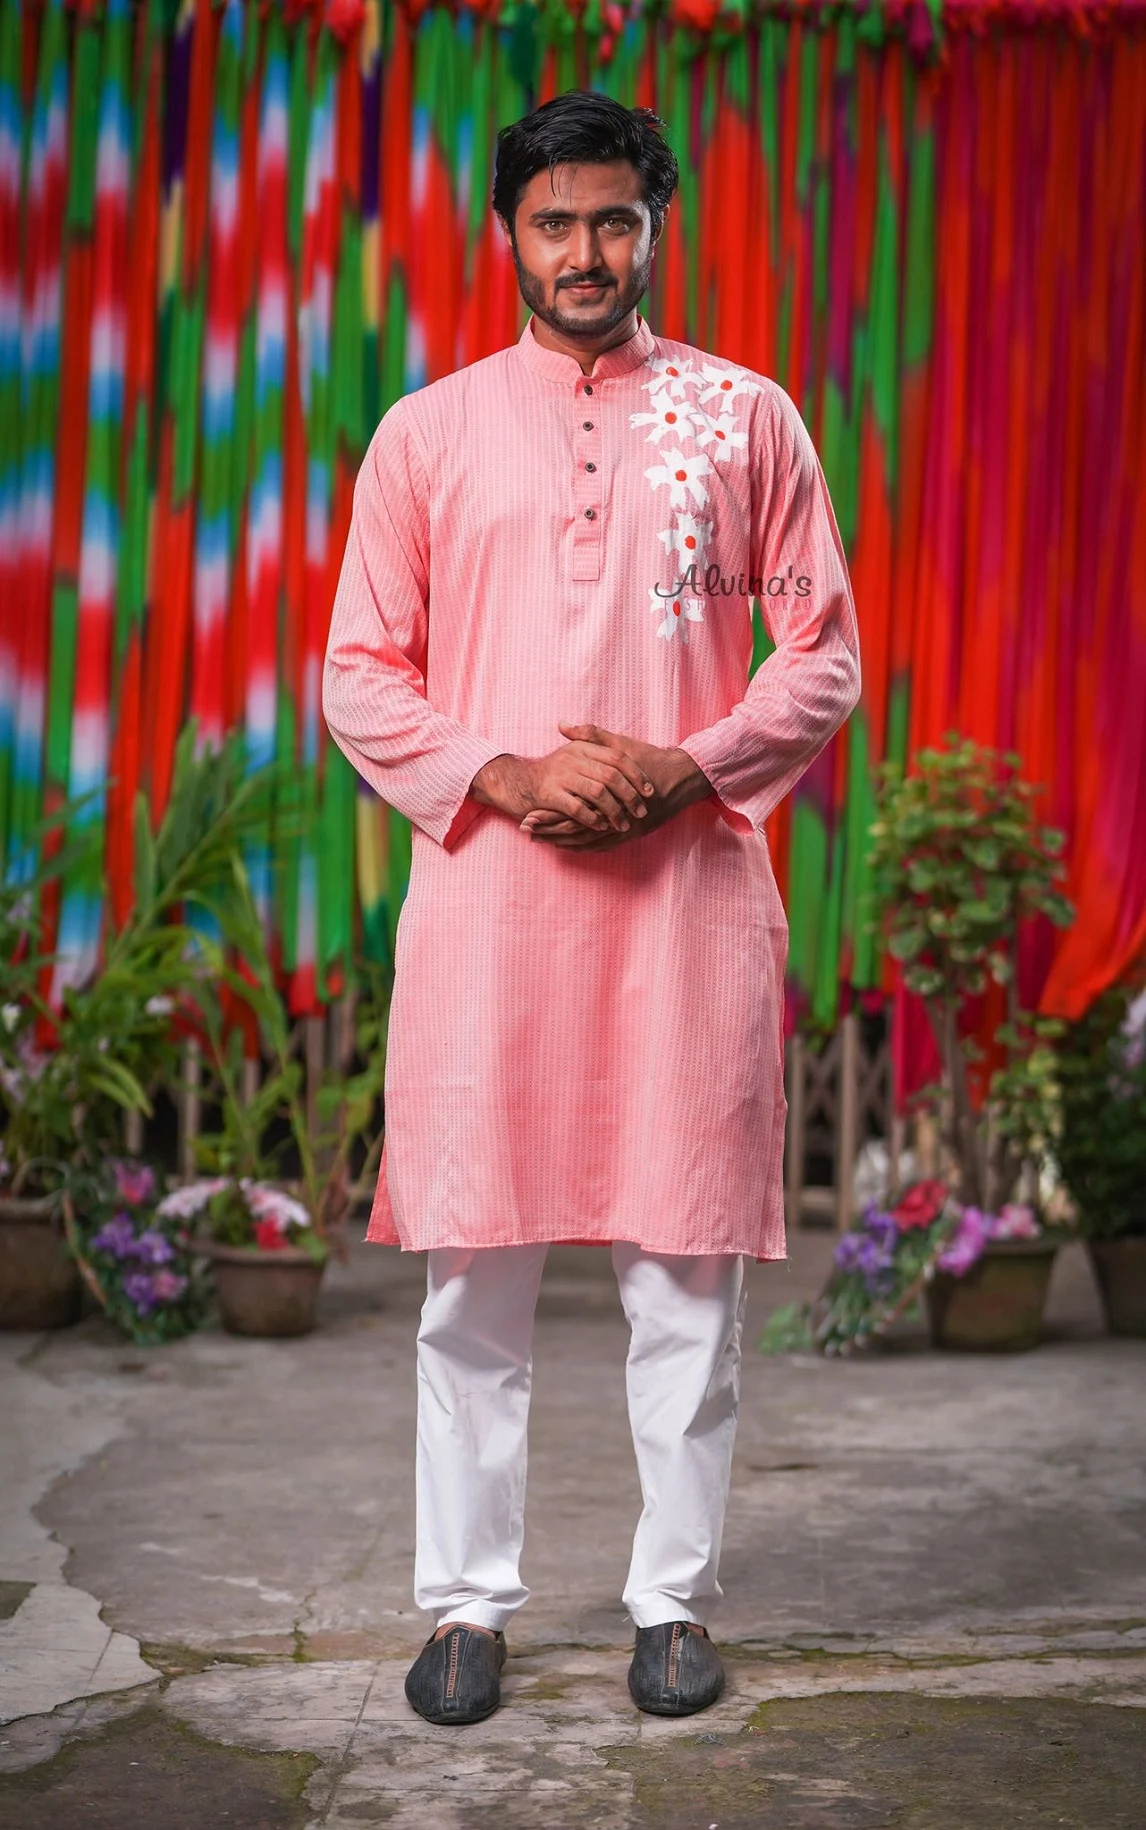 গোলাপি পাঞ্জাবি ডিজাইন - pink panjabi design - কালারফুল পাঞ্জাবি ডিজাইন - Colorful Punjabi Designs - NeotericIT.com